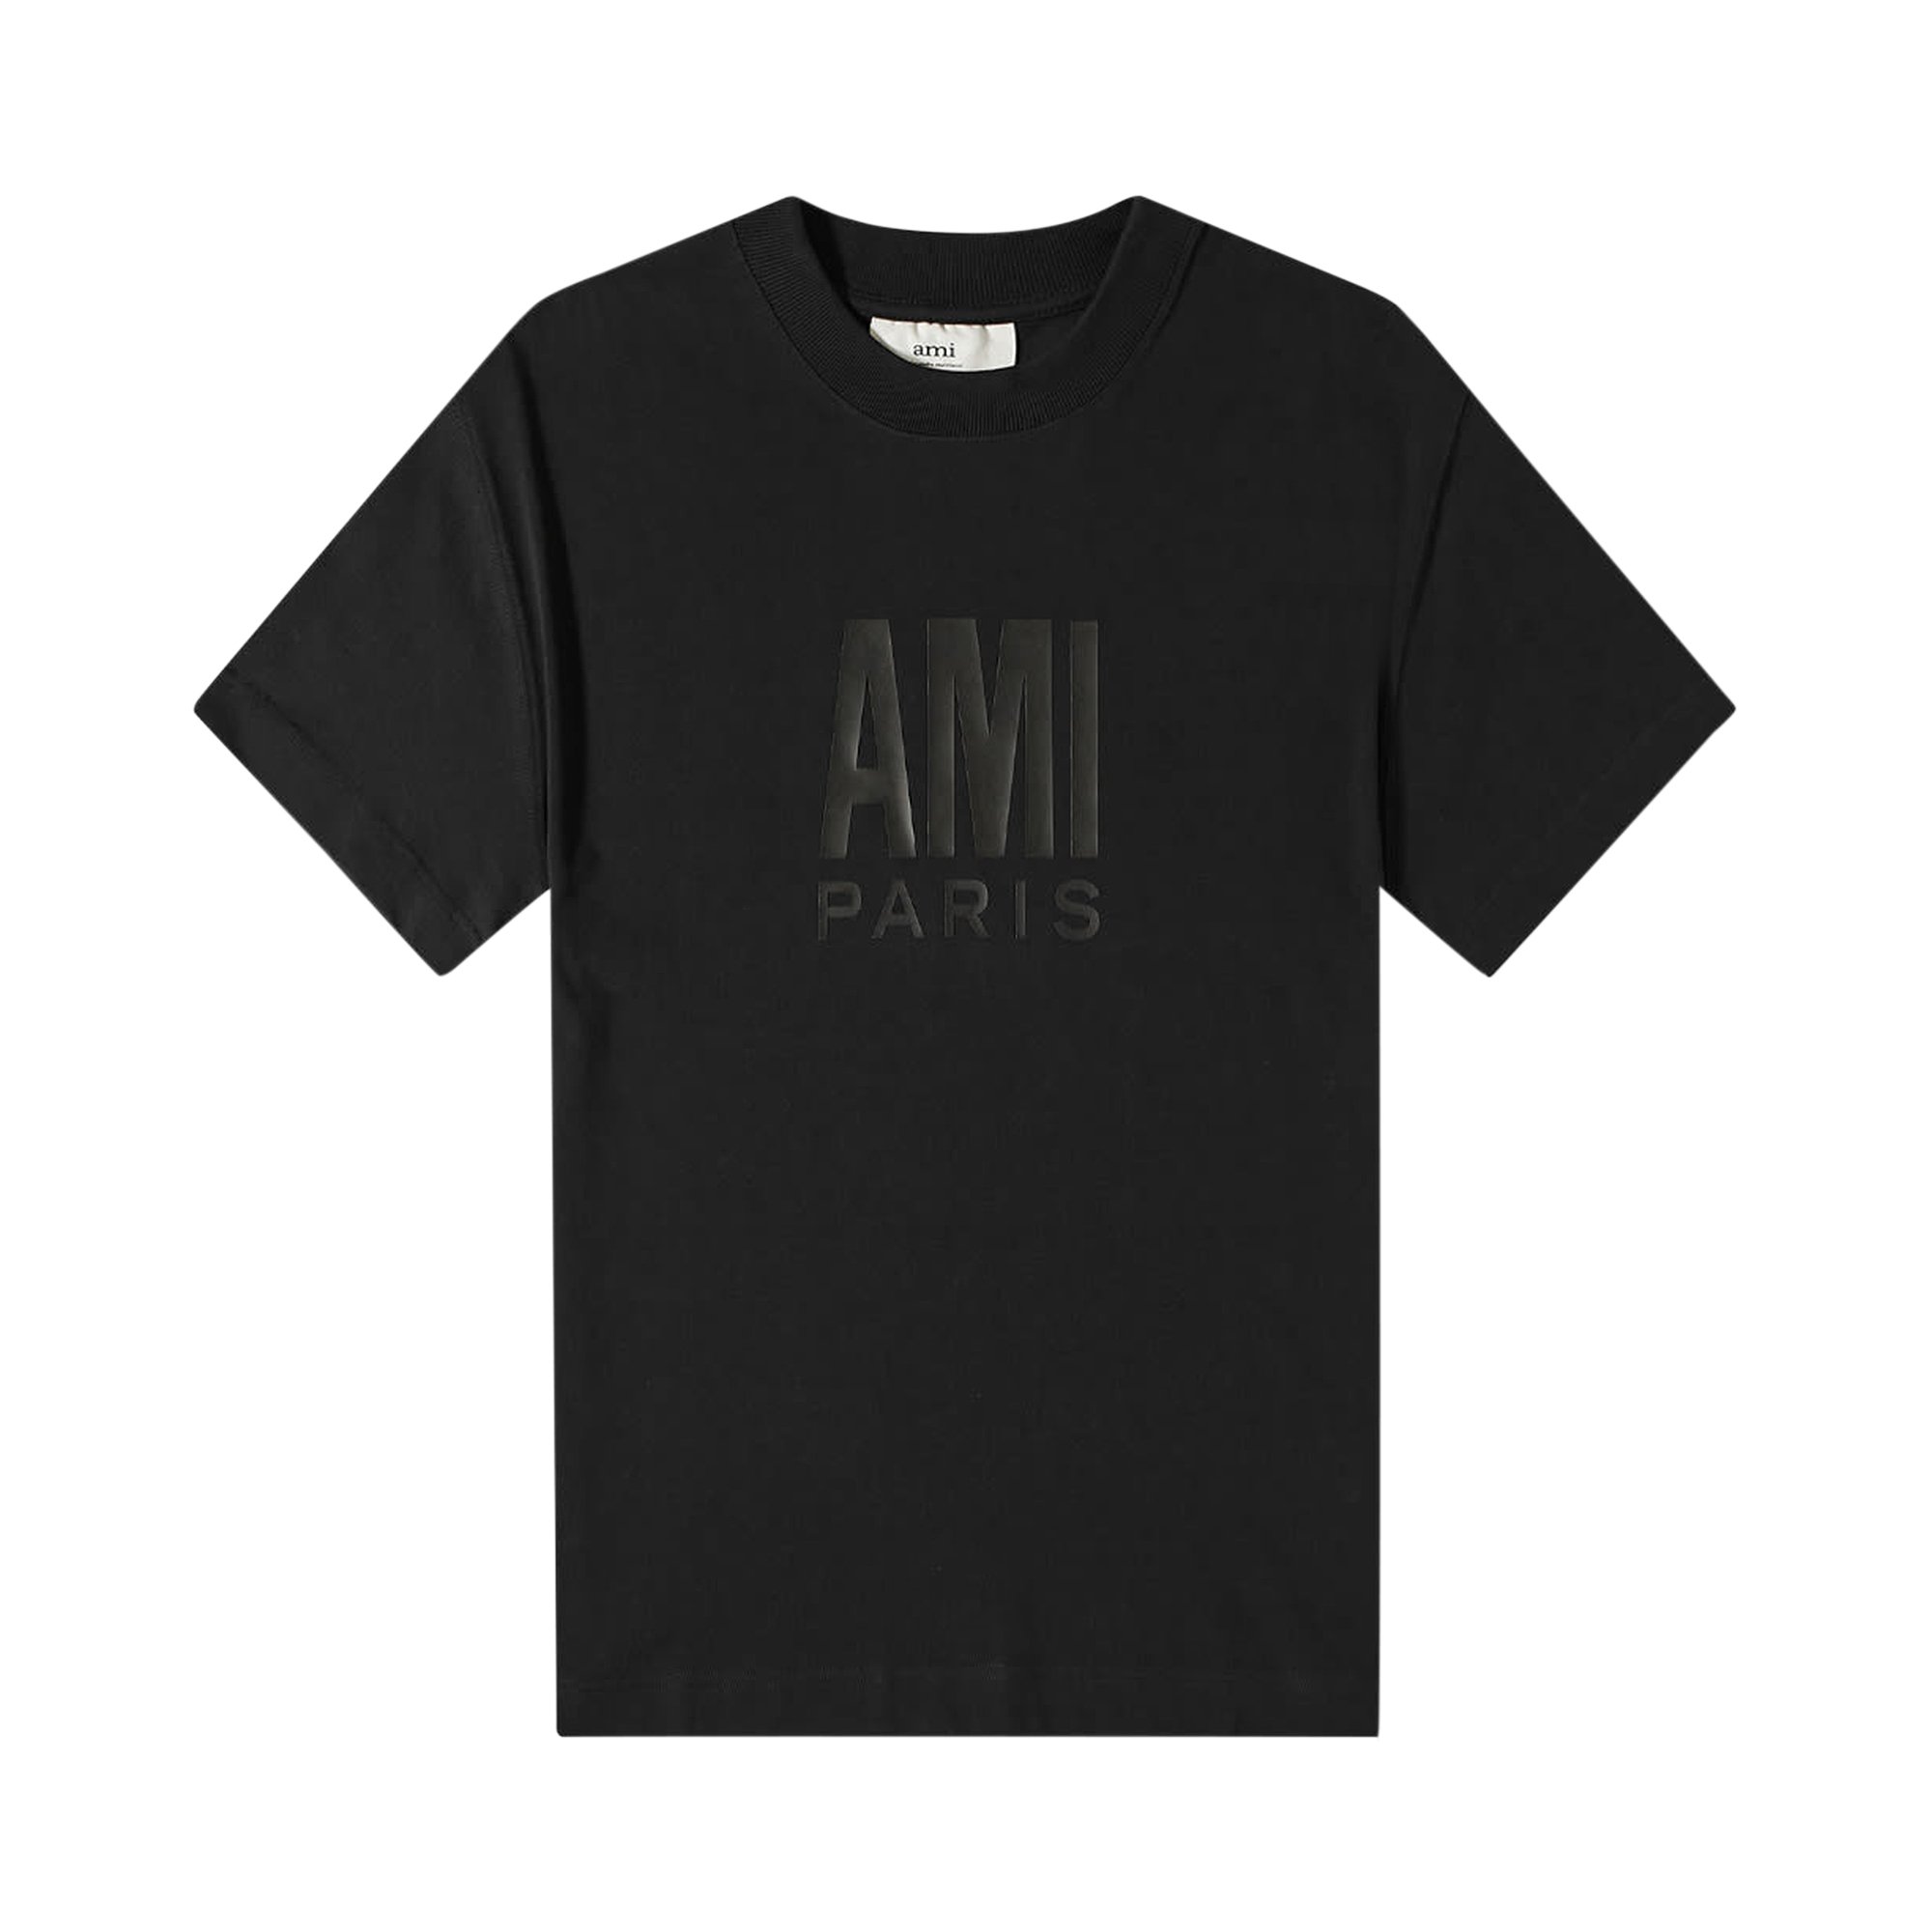 Buy Ami Paris T-Shirt 'Black' - H21HJ112 701 001 | GOAT